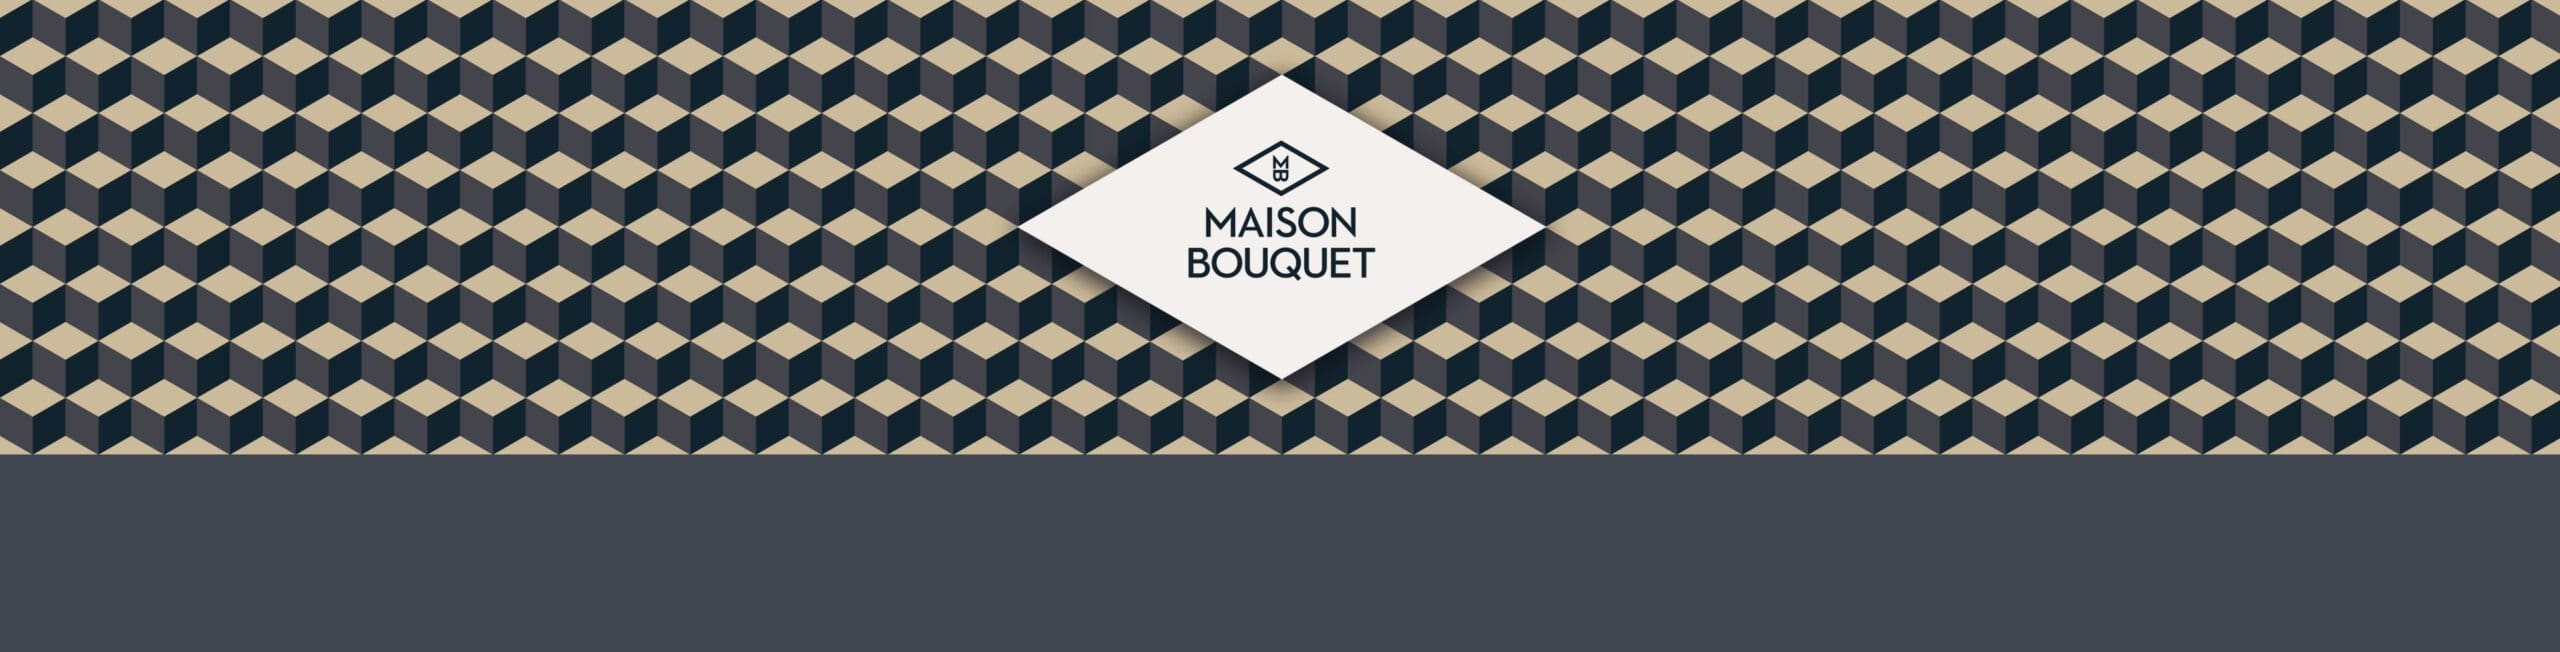 maison bouquet vikiu design logo frise